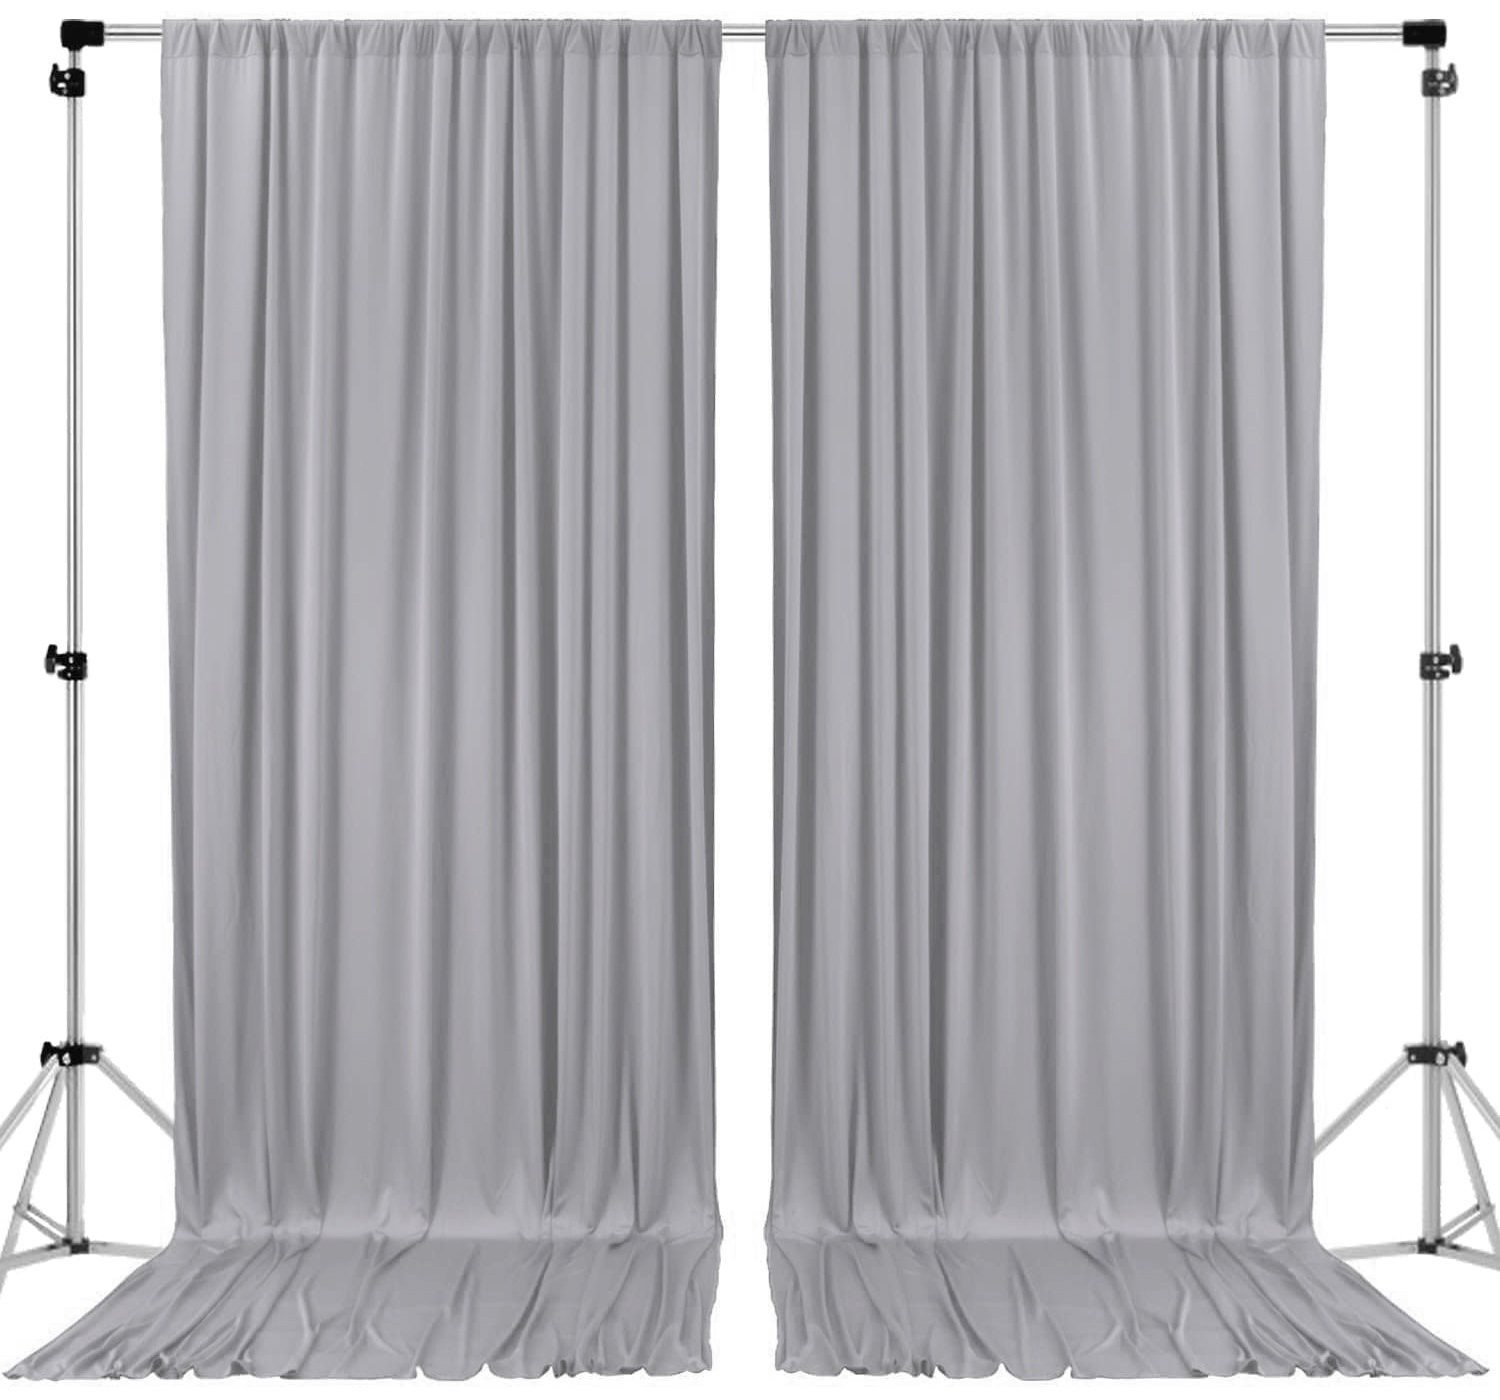 Paneles de telón de fondo de cortina blanca con bolsillos para